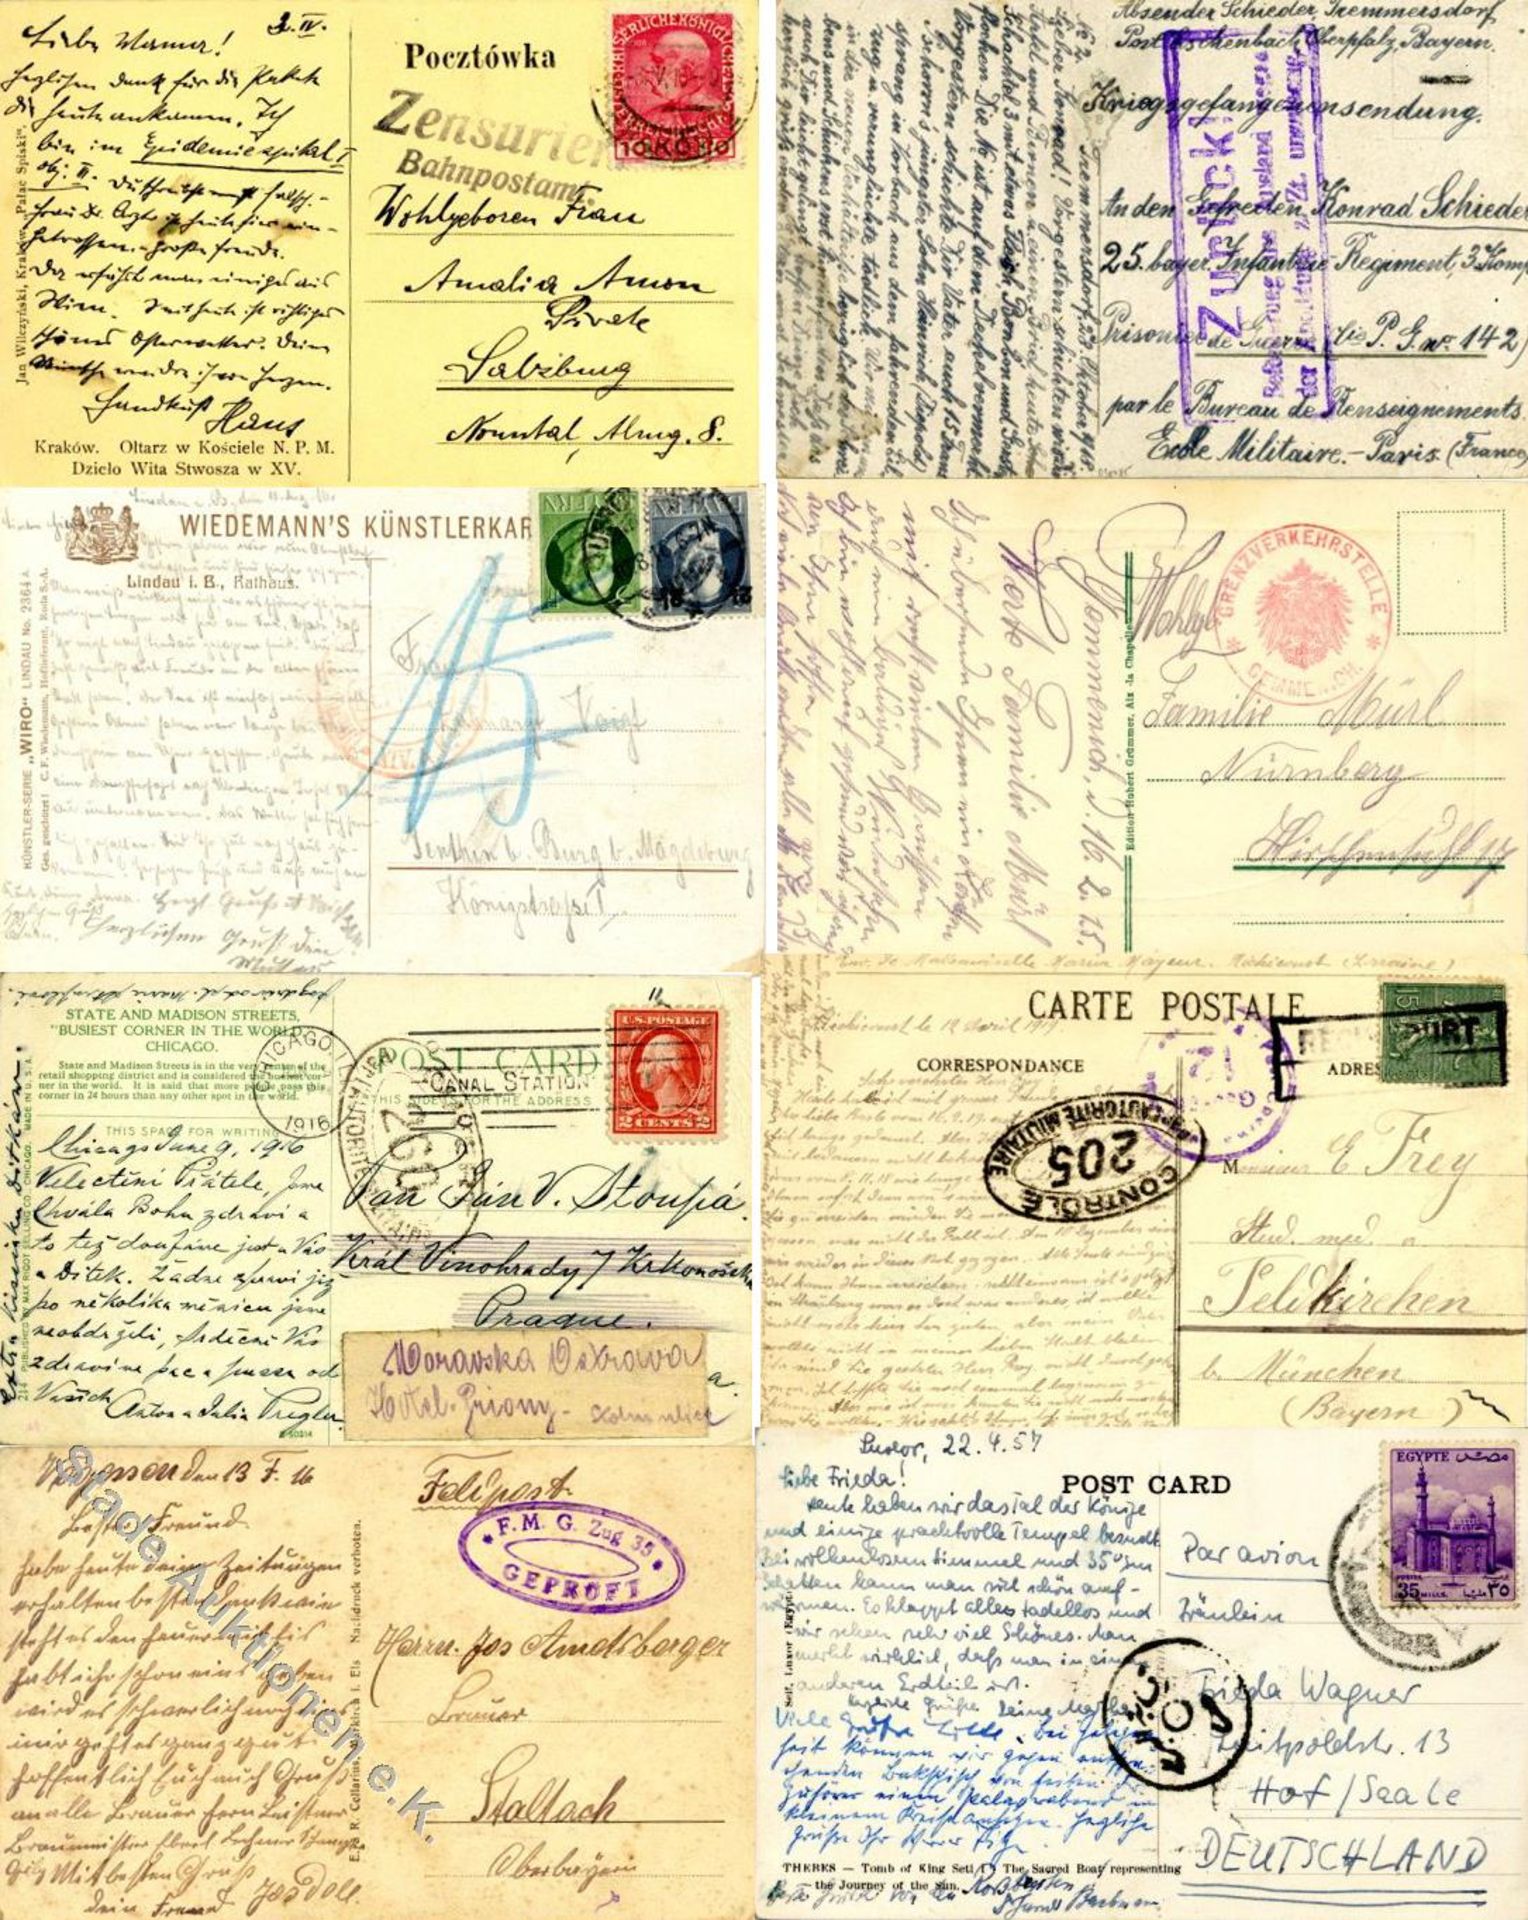 1914/61 ca. 300 Briefe, Karten, Ansichtskarten alle mit Zensur versehen, dabei die